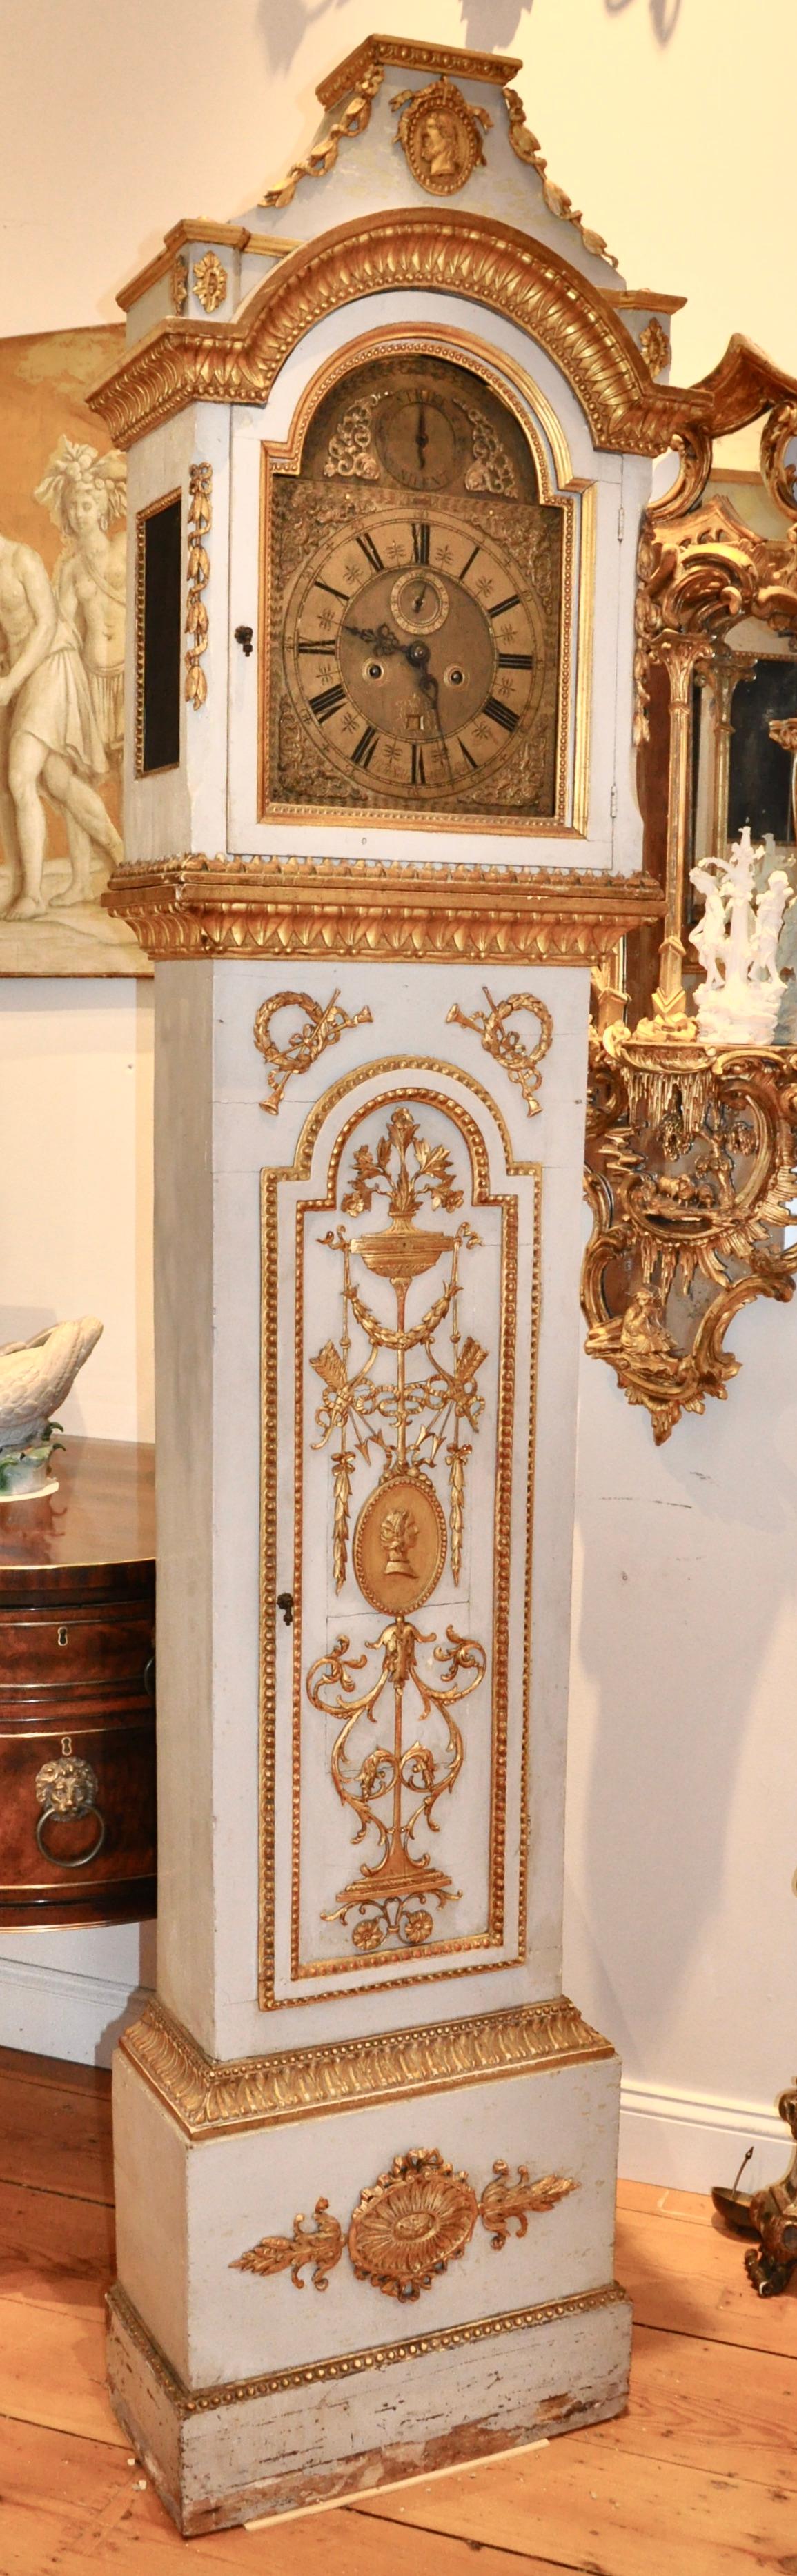 Anfang des 19. Jahrhunderts dänische geschnitzte und vergoldete neoklassische Standuhr. Originalvergoldung auf allen handgeschnitzten neoklassizistischen Ornamenten. Höchstwahrscheinlich aus einem Palast. Profile von je einem Mann und einer Frau,